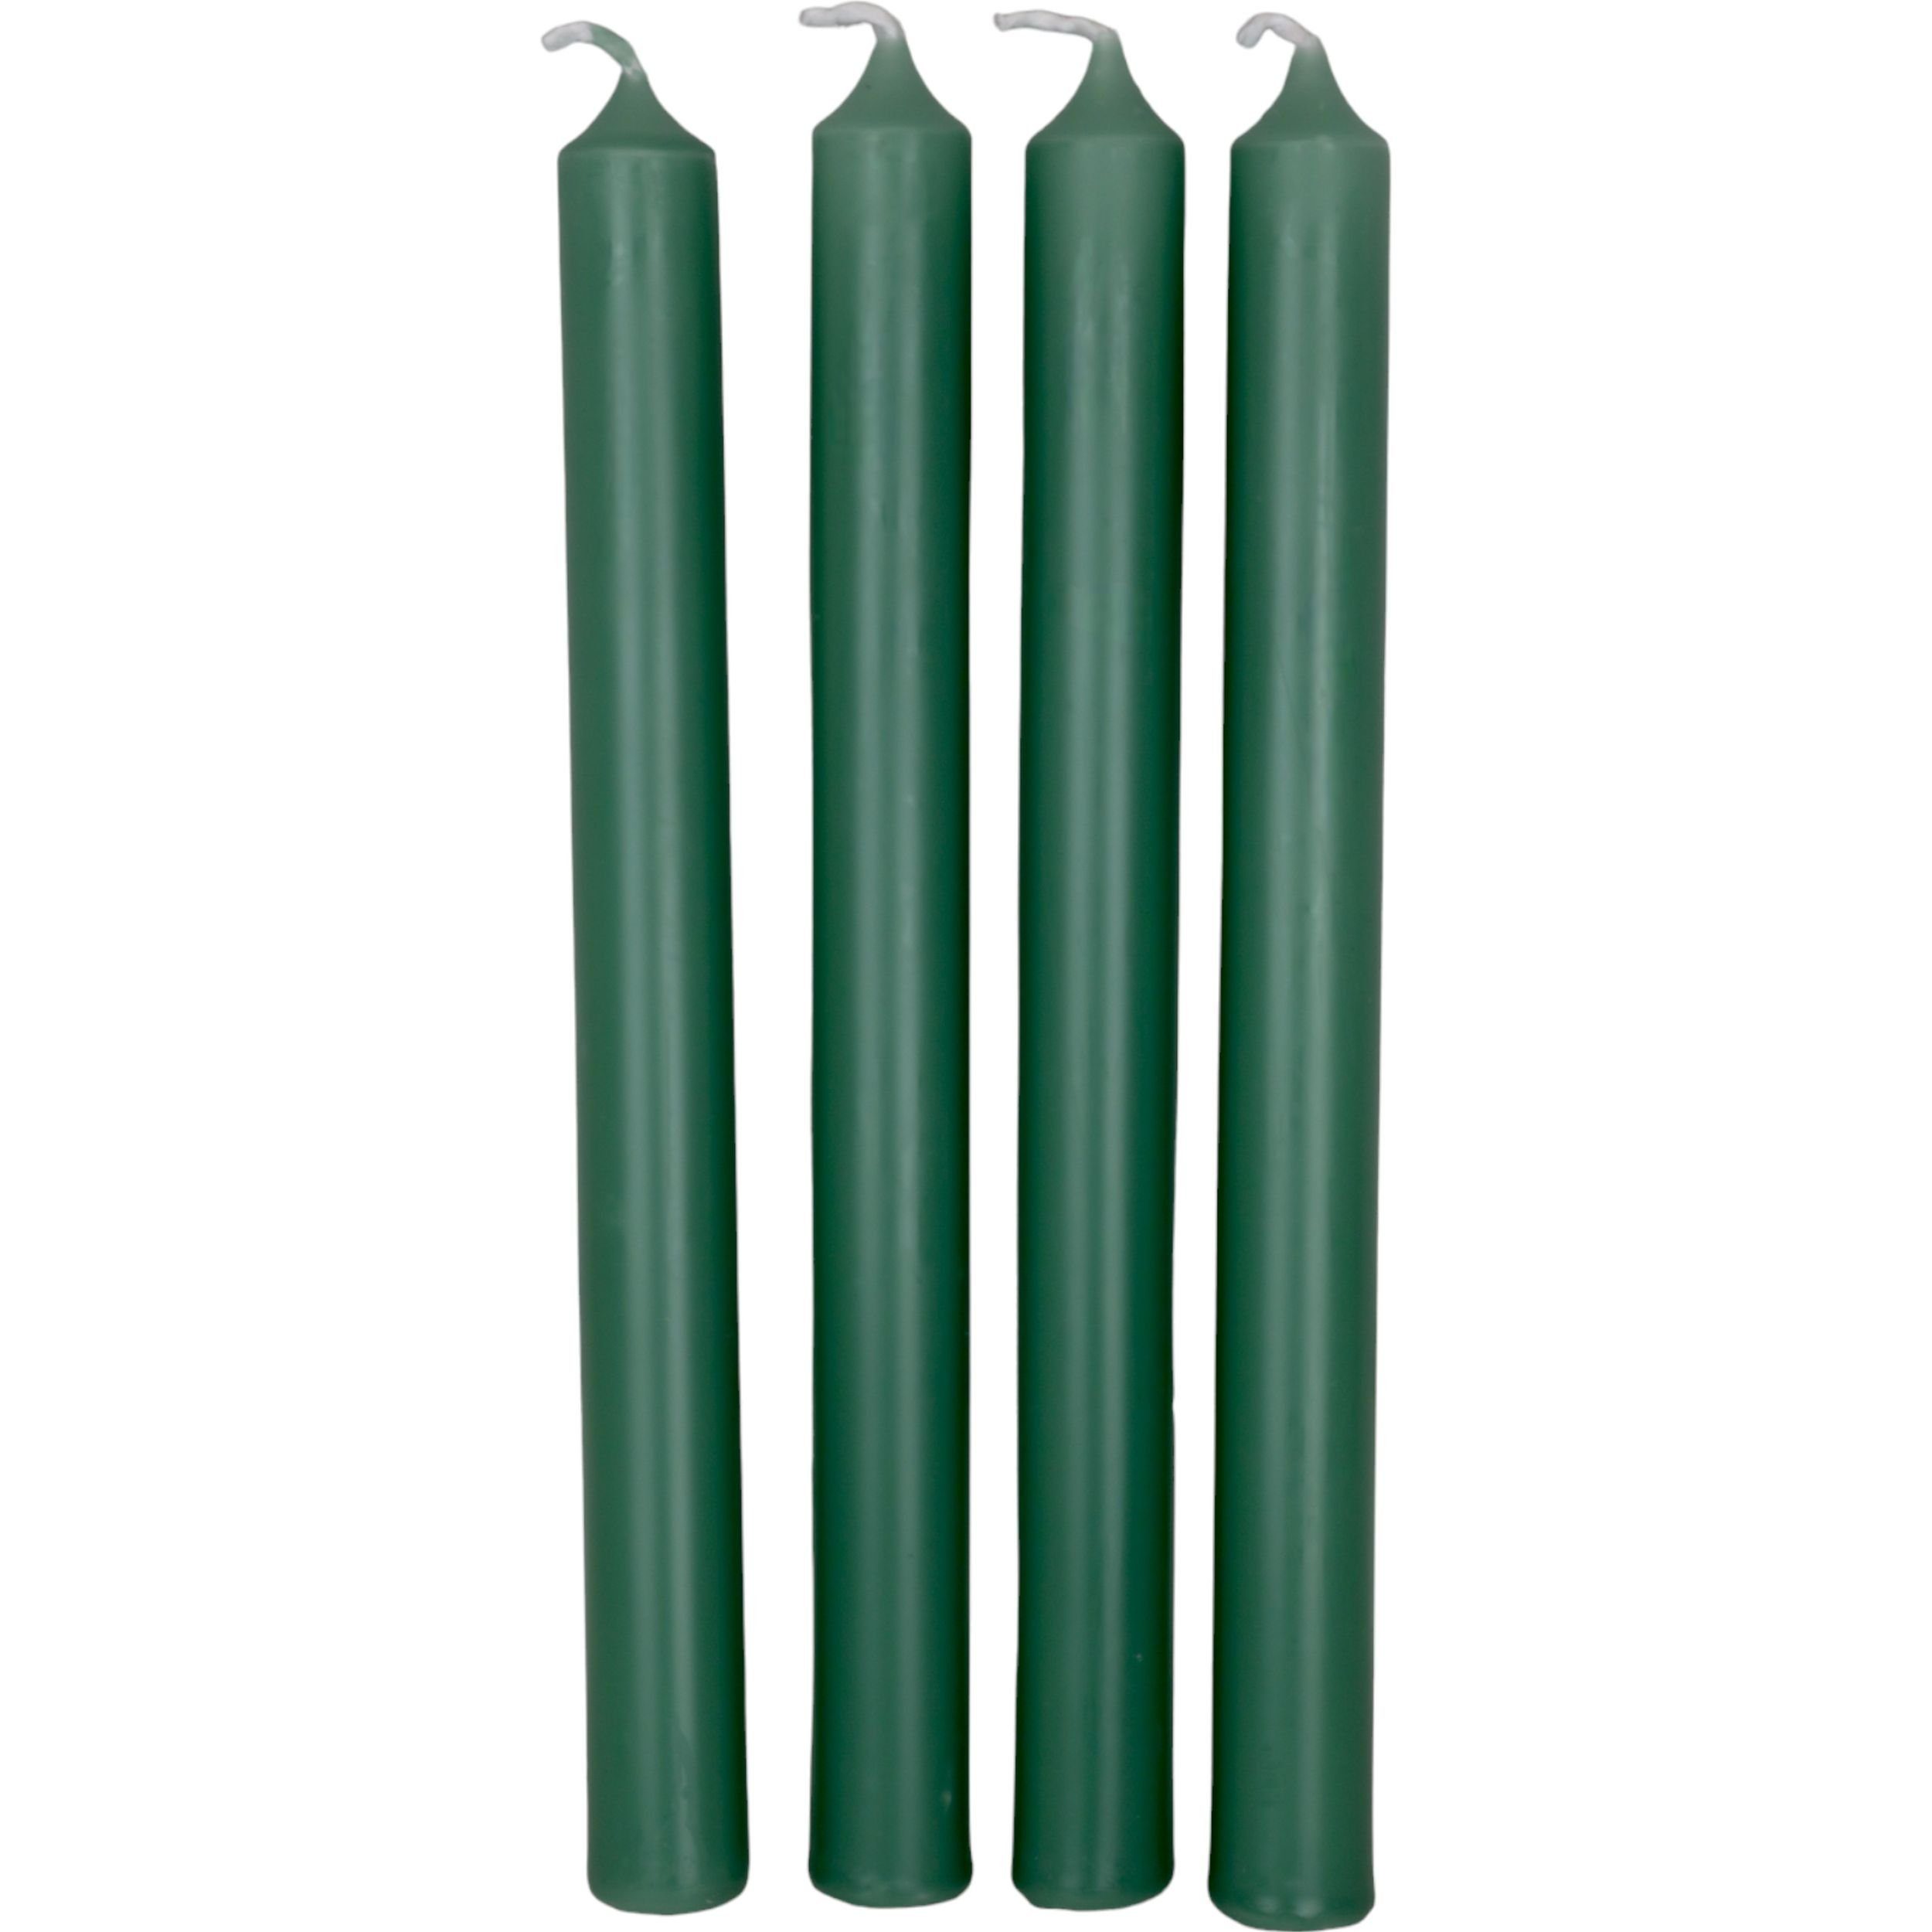 DekoTown Tafelkerze Stabkerzen Kerze Smaragd Grün 25cm, 4 St.